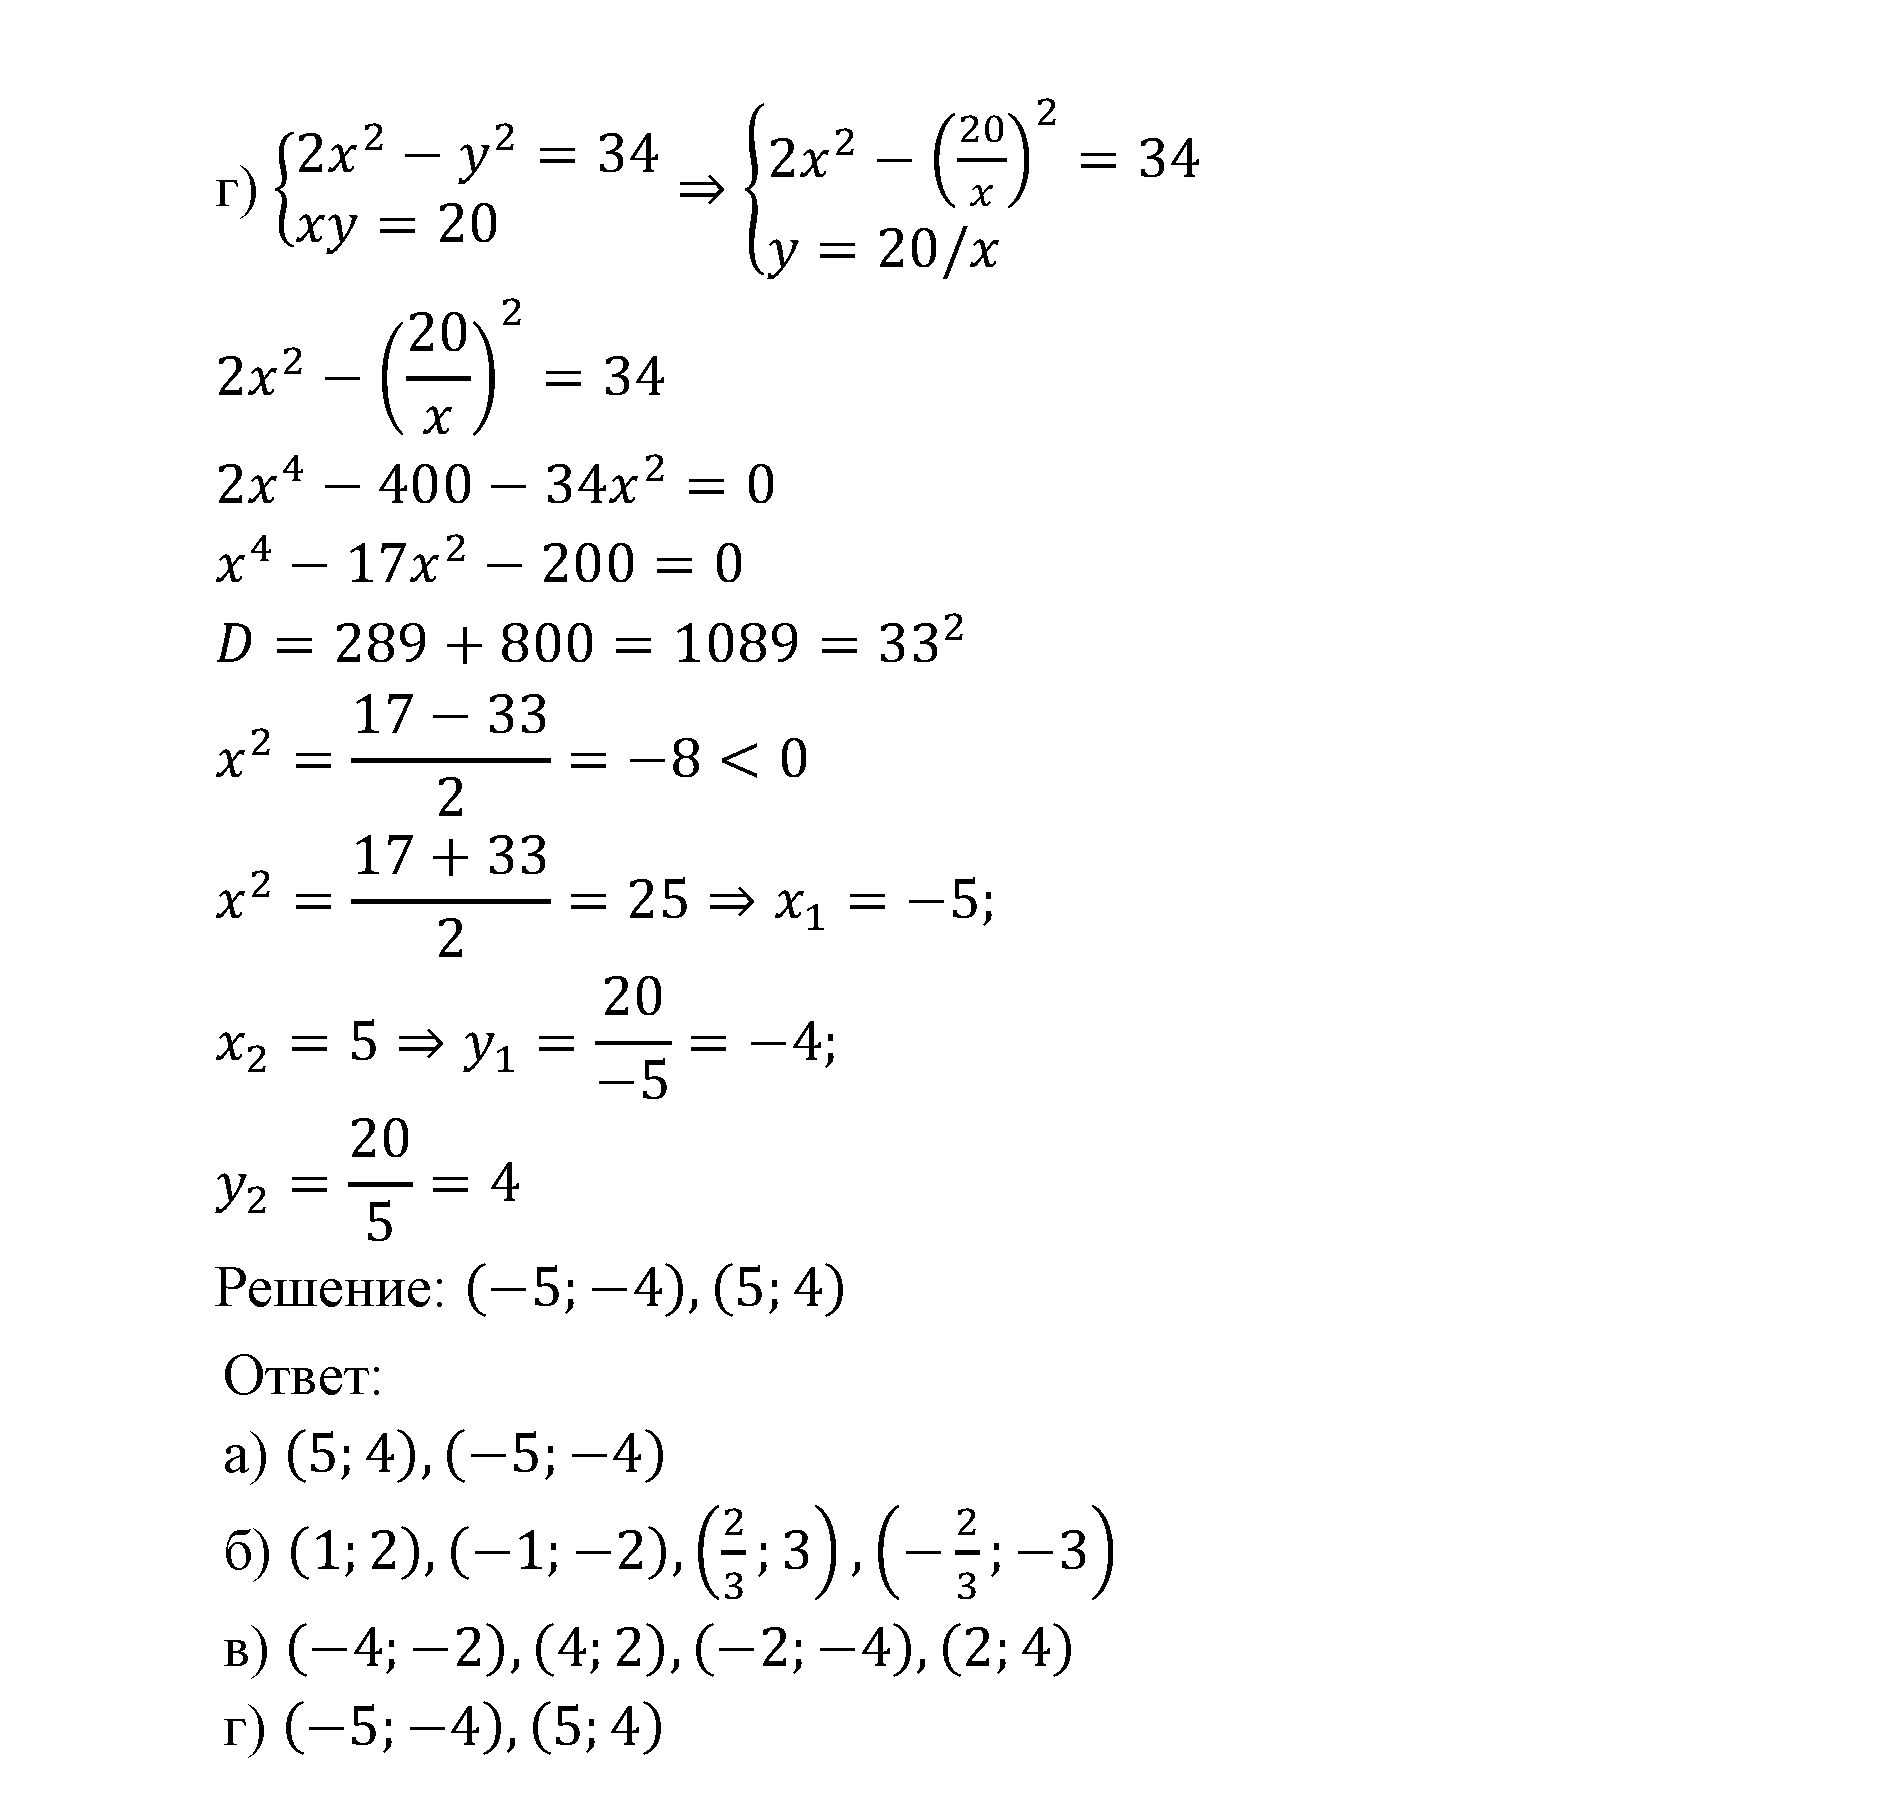 страница 43 задача 6.13 алгебра 9 класс Мордкович 2010 год